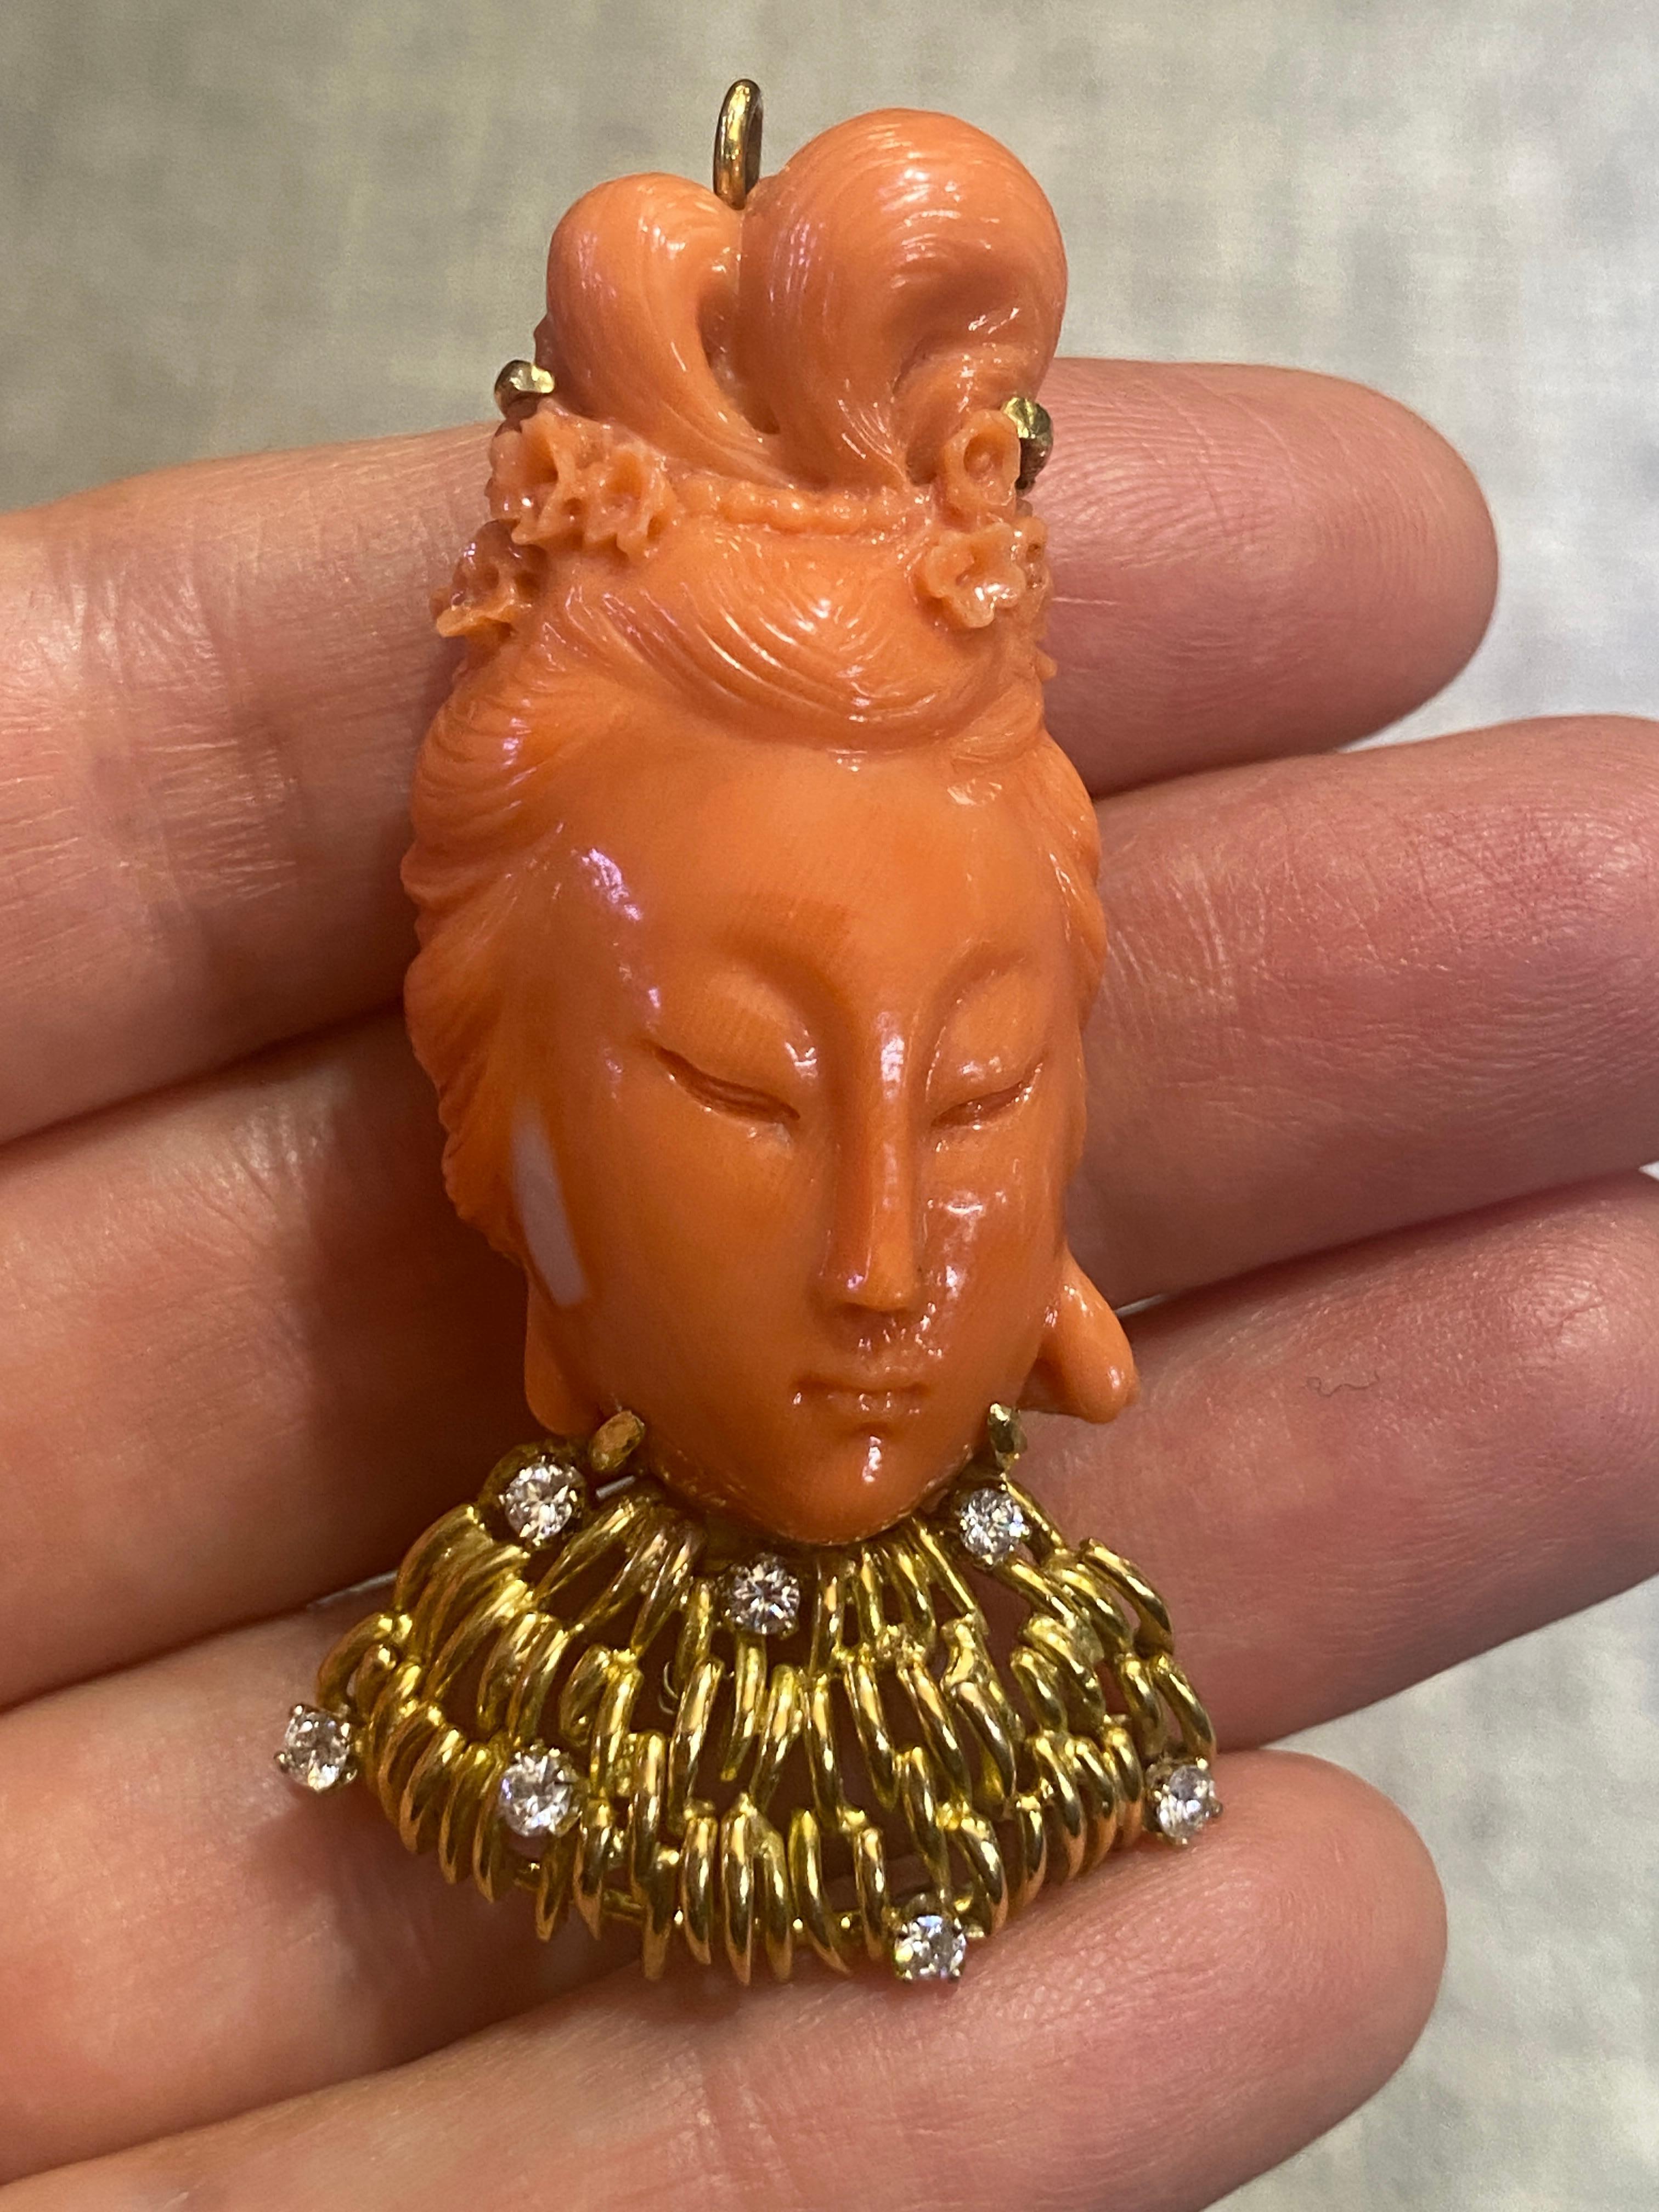 Diese schöne geschnitzte Buddha-Brosche aus Koralle hat einen zart geschnitzten Haarknoten, der mit Perlen und kleinen Blumen verziert ist. Das Halsband ist aus 14-karätigem Gold gefertigt und mit 7 Diamanten im Rundschliff von insgesamt ca. 0,35